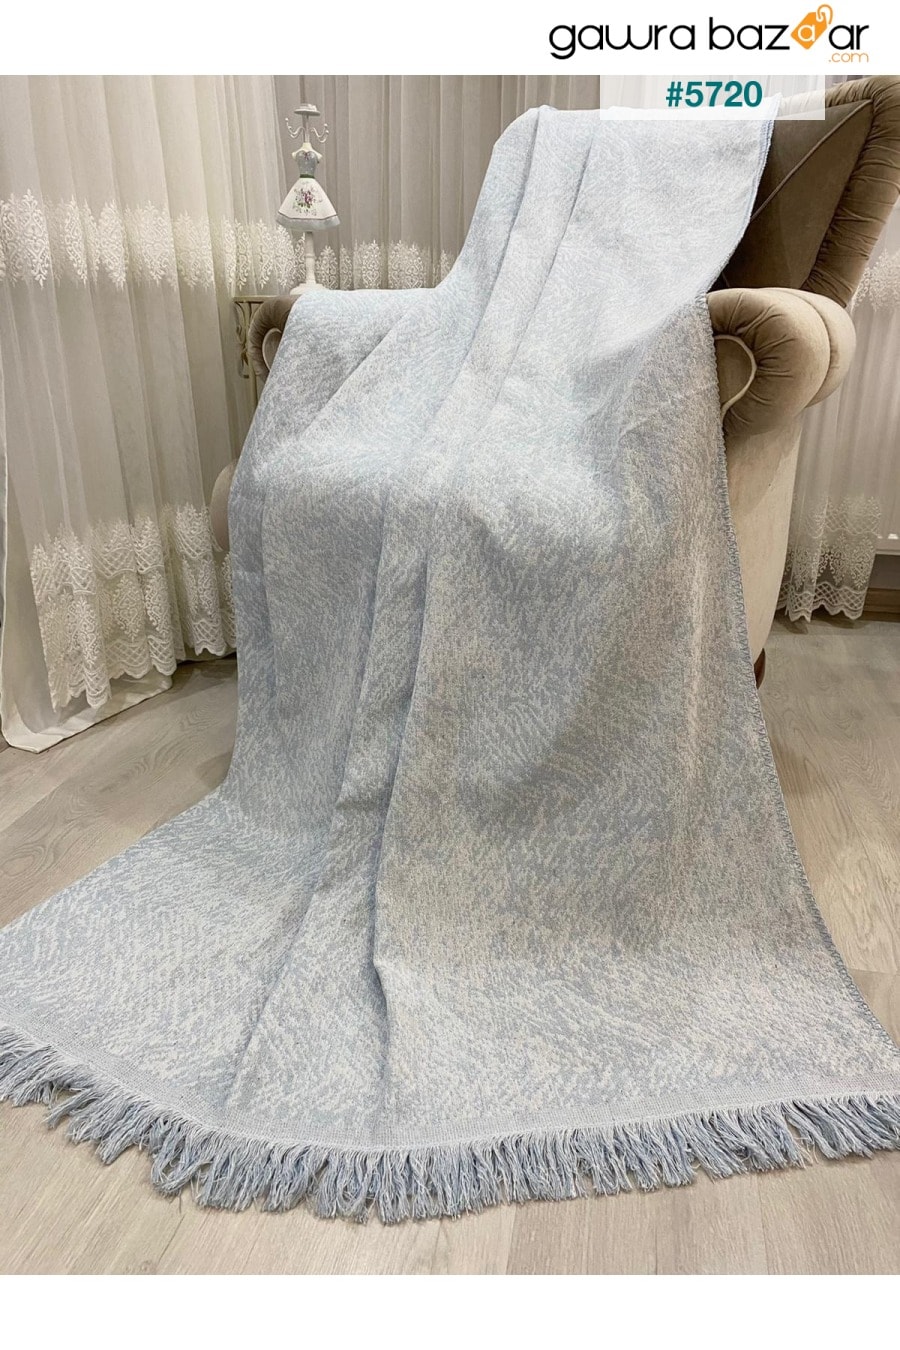 غطاء أريكة صوفا قطني فاخر أزرق ثلجي 170x220 وجهين مقاوم للعرق. Özlü Home 0